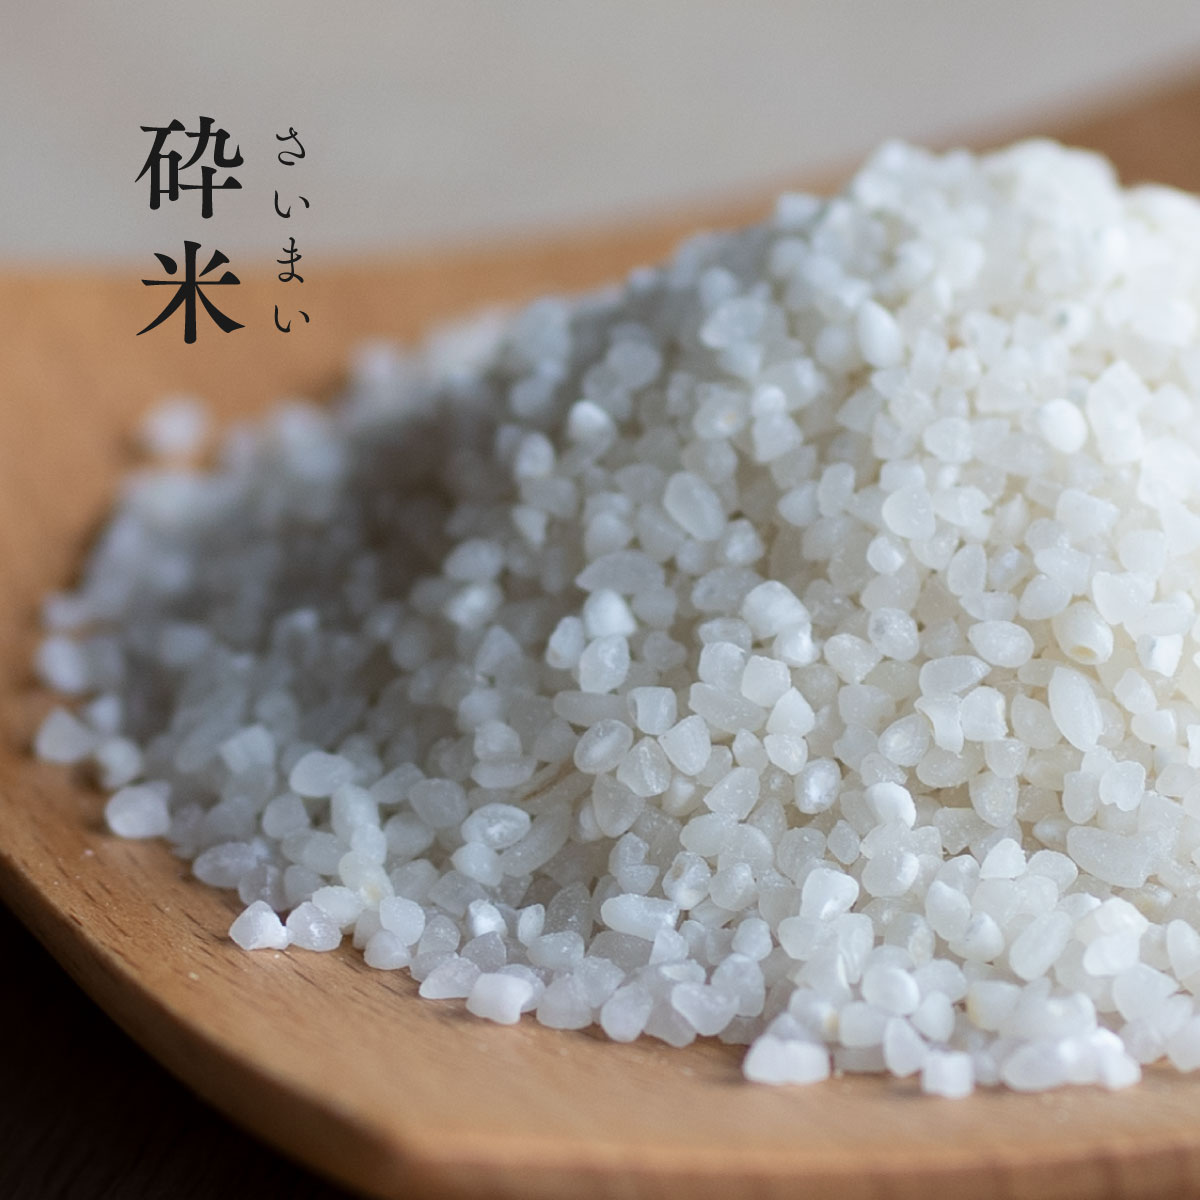 砕米 砕け米 10kg (5kg×2袋) 送料無料 くだけ米 割れ米 くず米 餌米 エサ米 ペット用米 ◎小動物・小鳥のエサにおすすめ ×食用ではありません